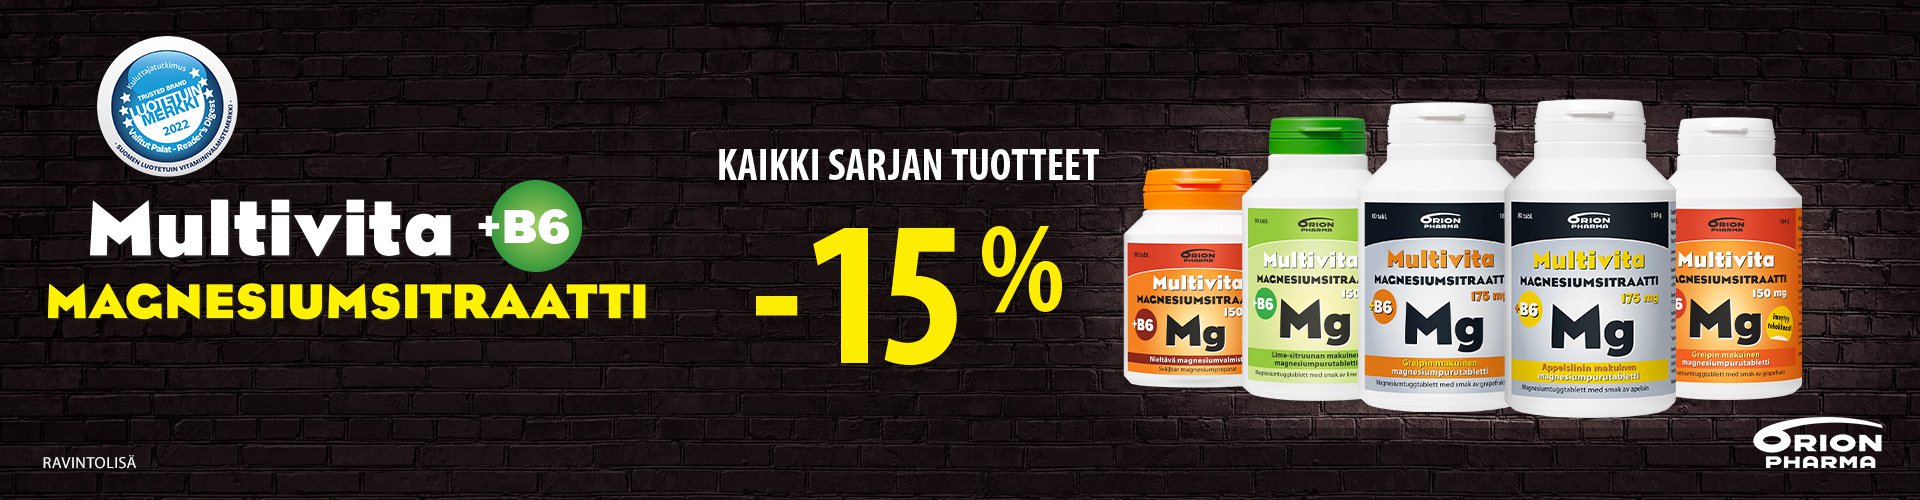 multivita magnesiumsitraatti -15%